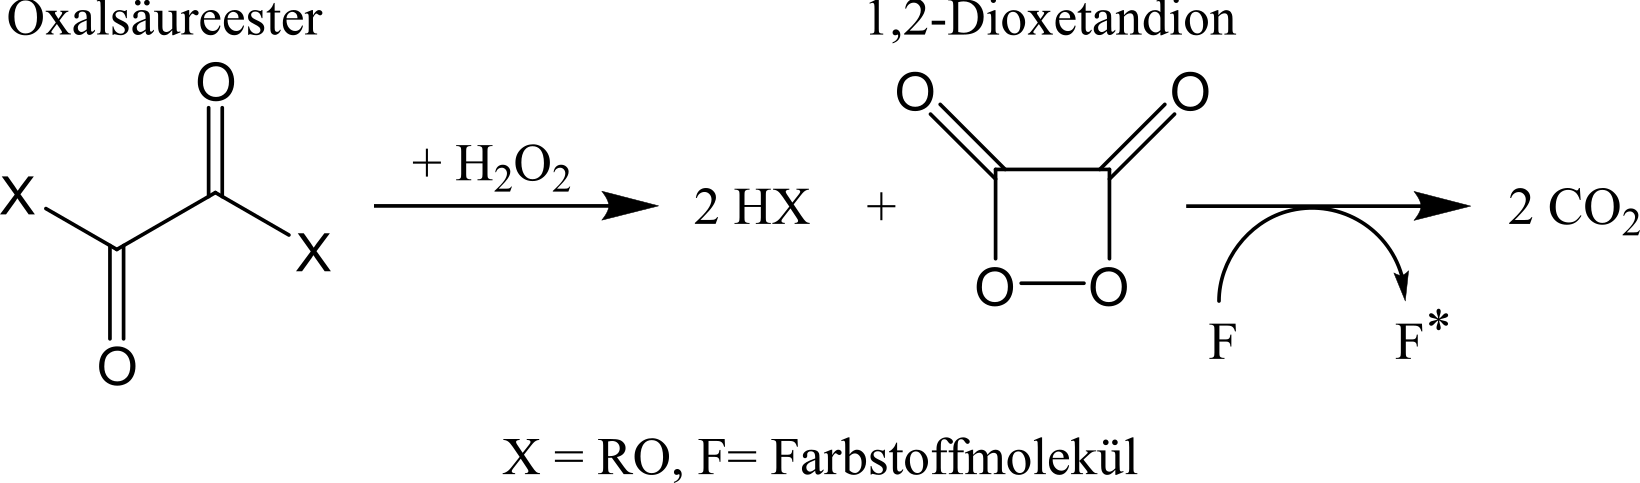 Allgemeiner Reaktionsmechanismus für die Reaktion eines Oxalsäureesters mit Wasserstoffperoxid in einem Knicklicht.